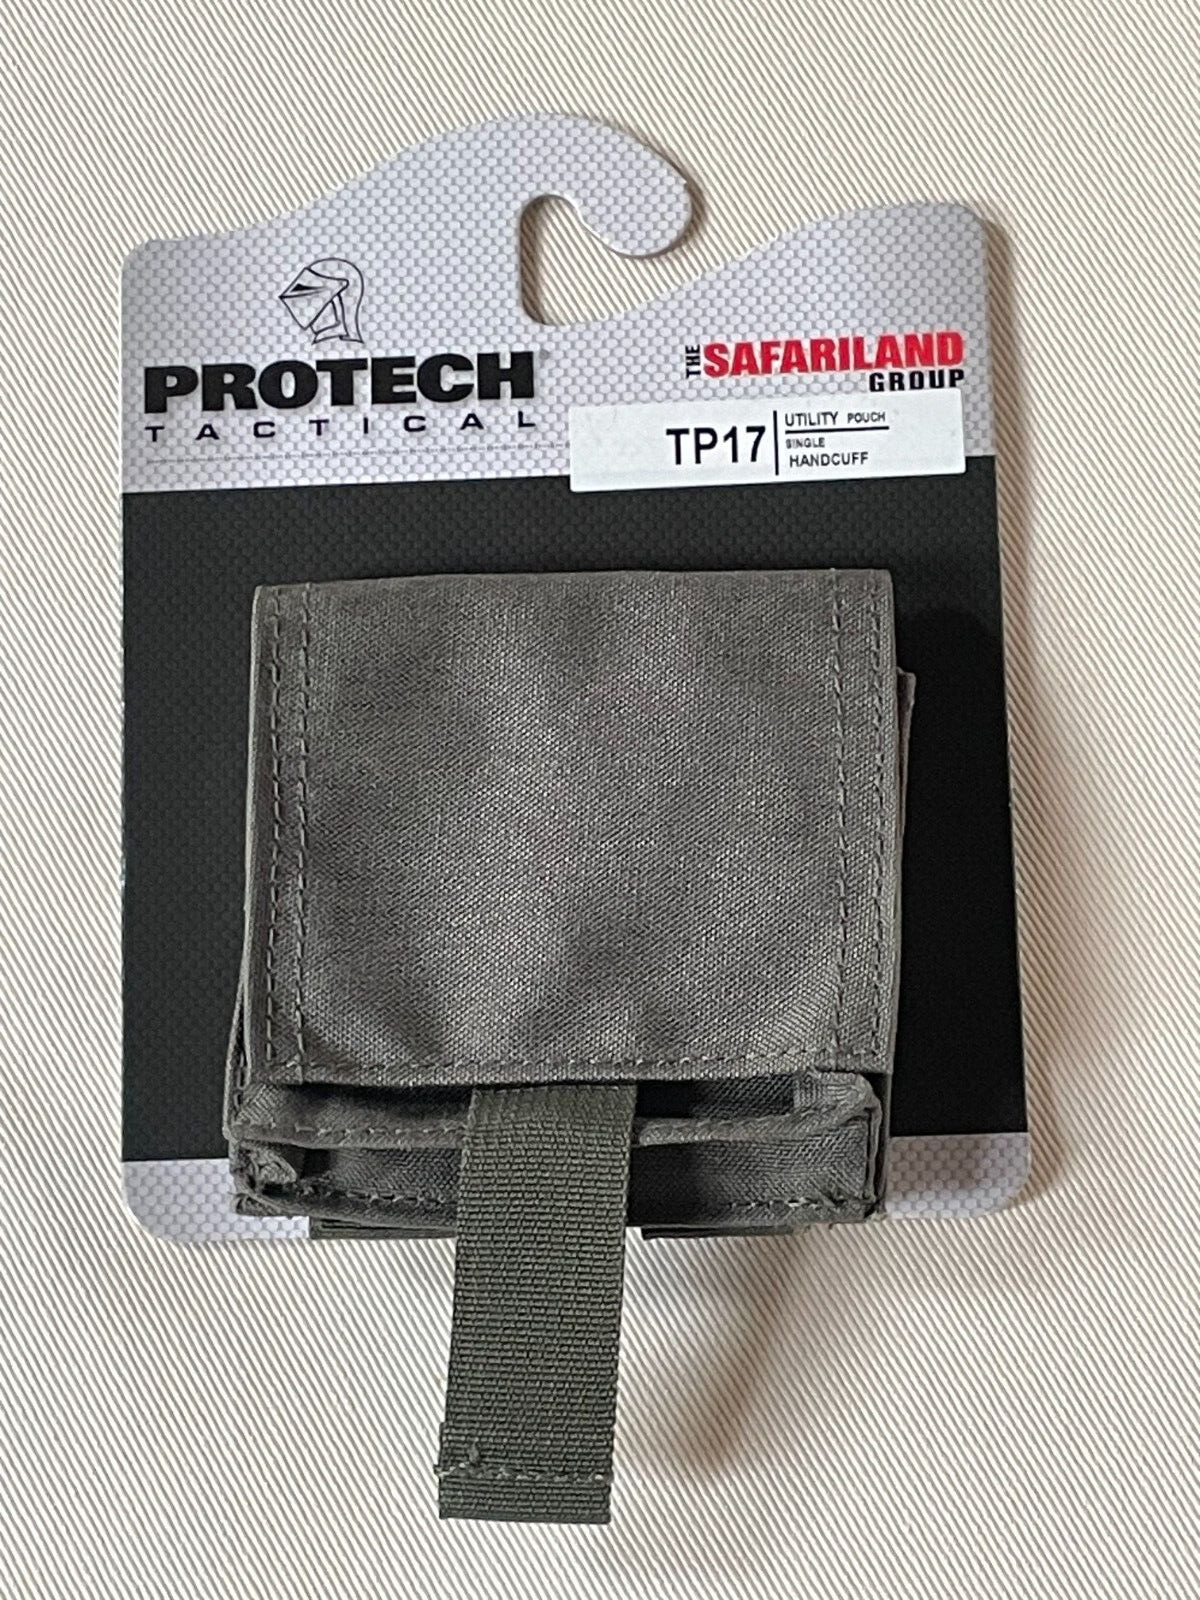 SAFARILAND PROTECH TP17 Utility Pouch Single Handcuff OD Green